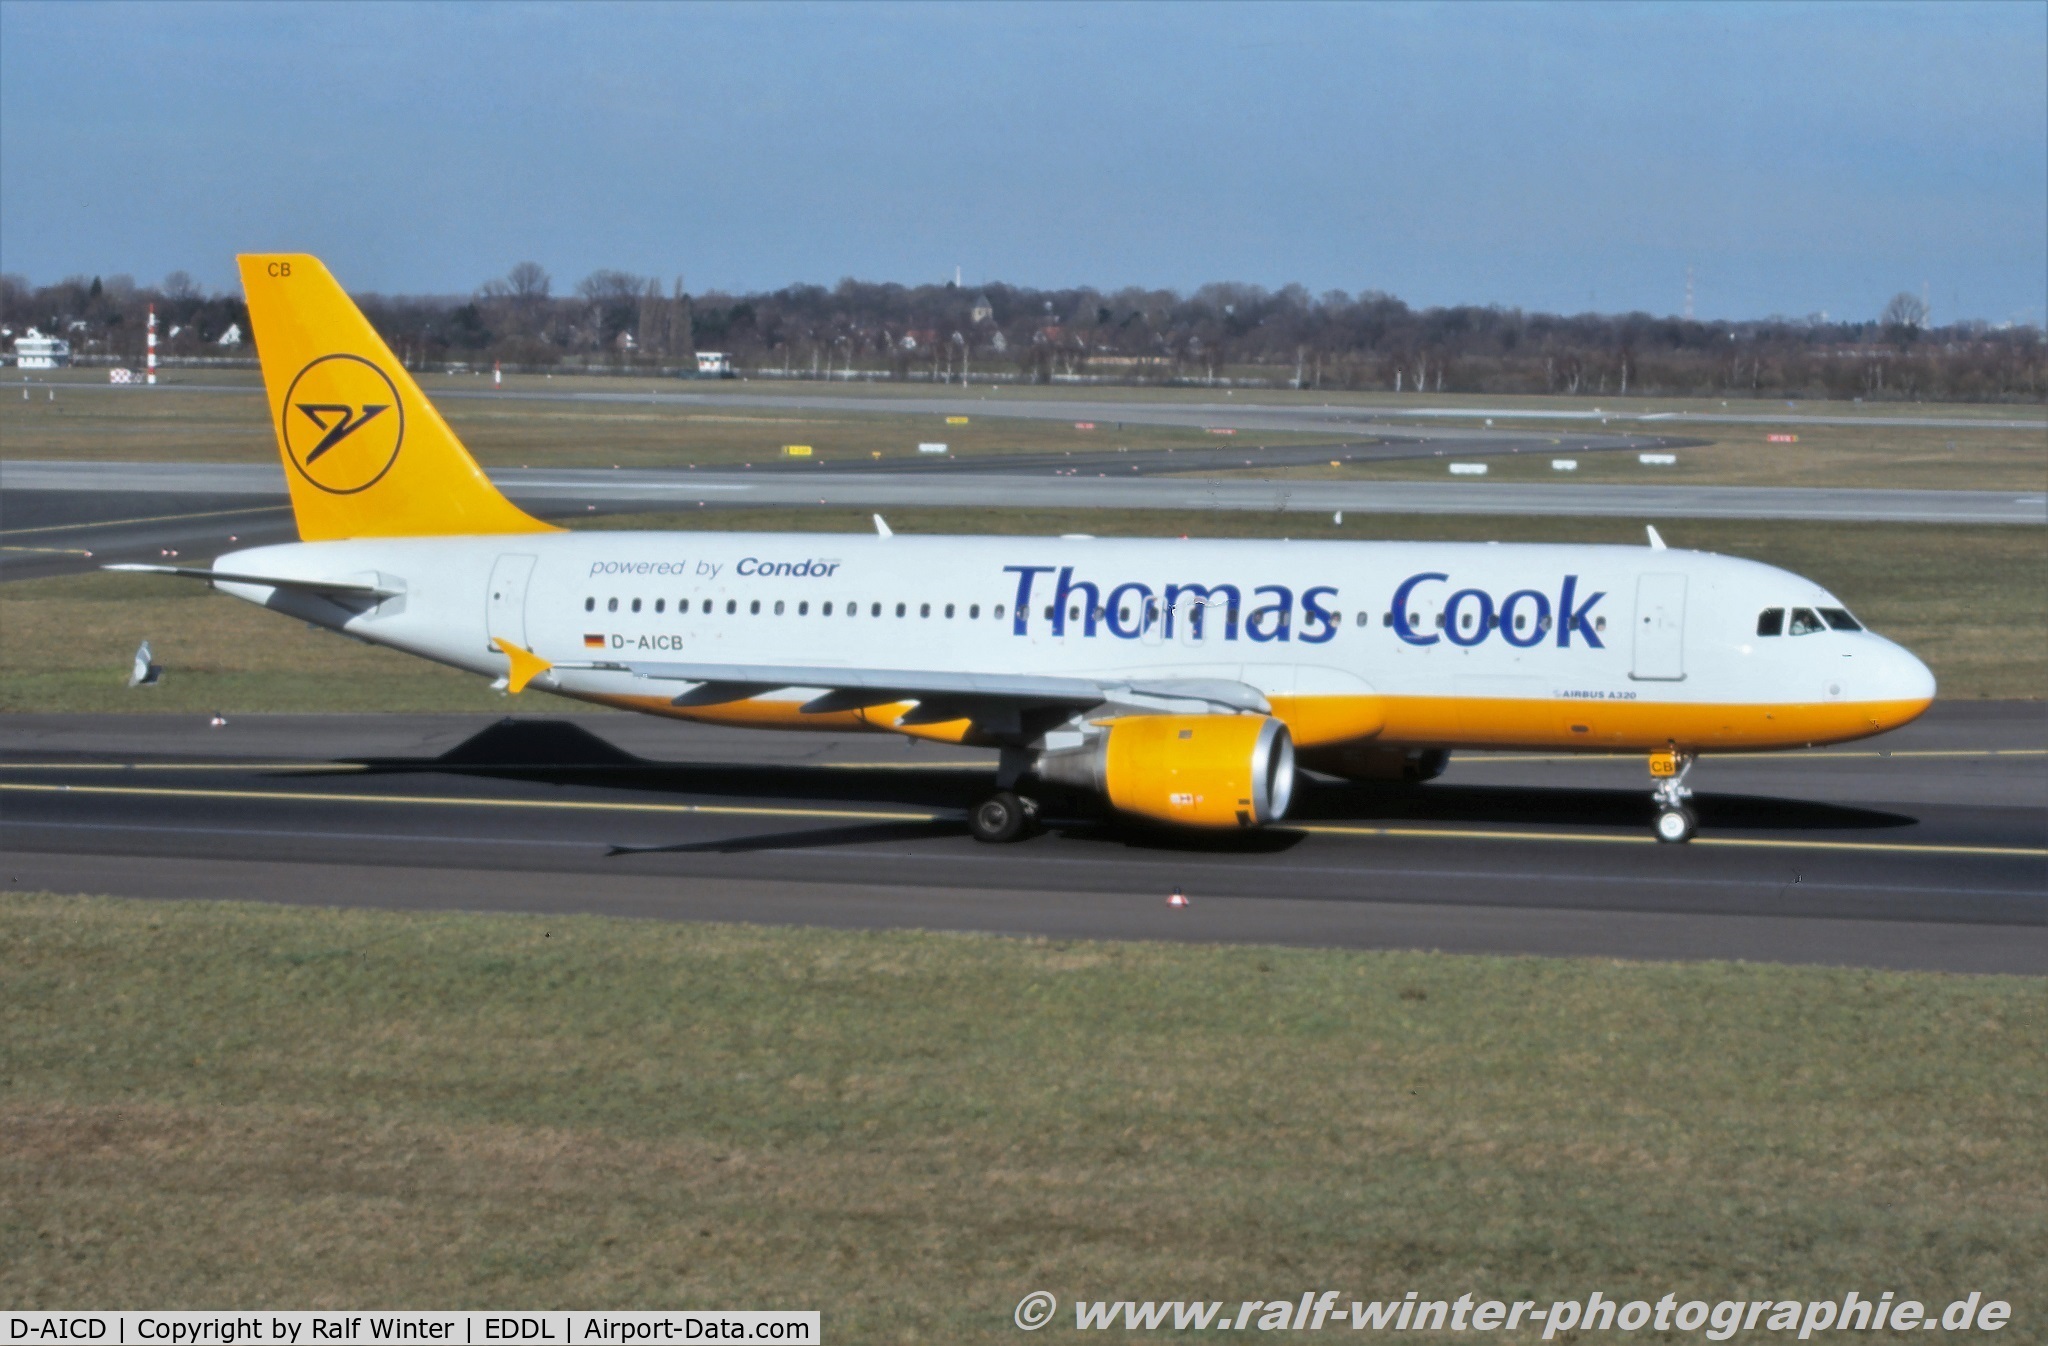 D-AICD, 1998 Airbus A320-212 C/N 0884, Airbus A320-212 - Condor 'Thomas Cook' - 884 - D-AICD - 03.2003 - DUS